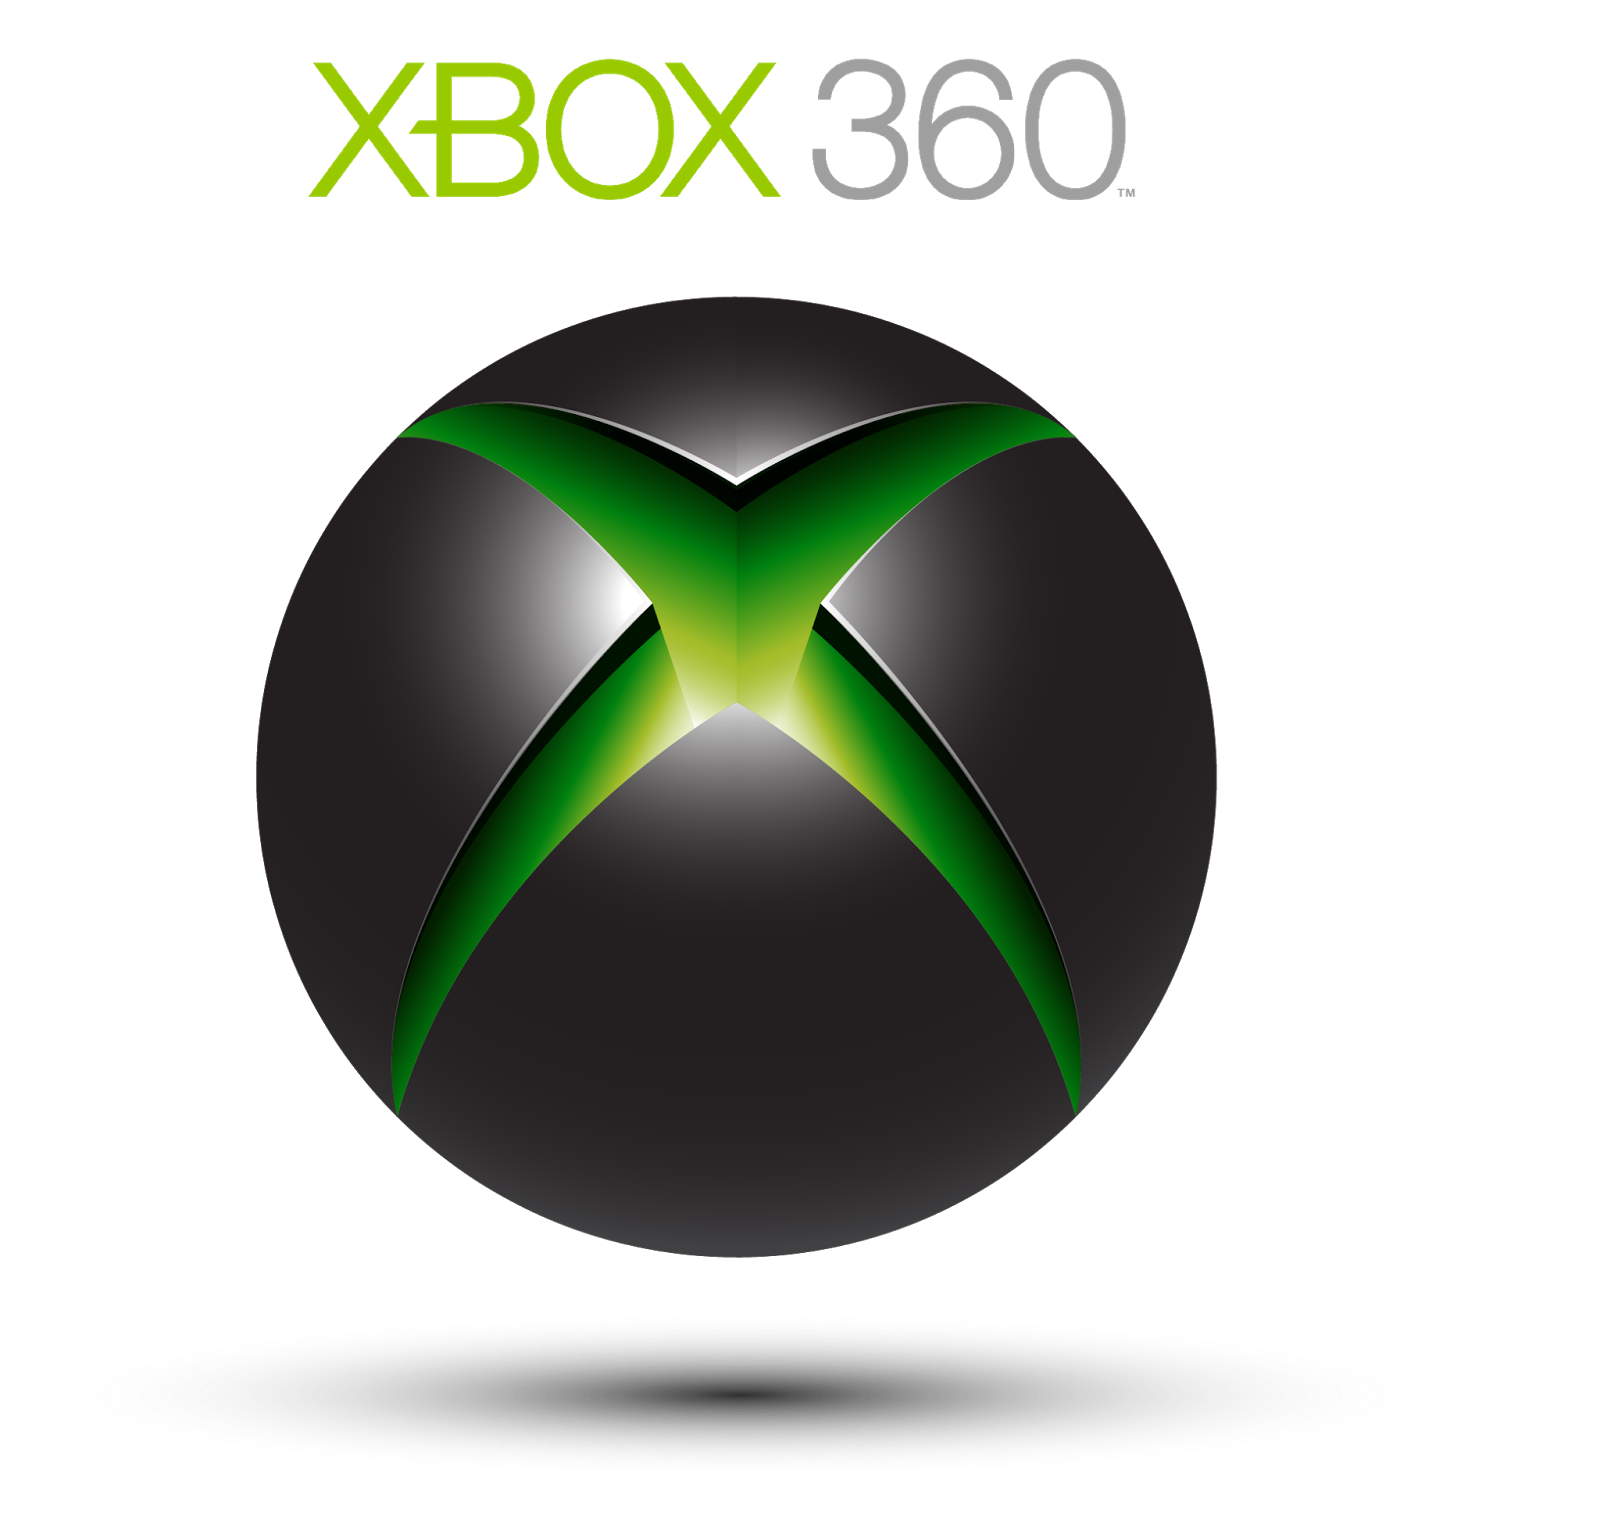 Xbox 360 life. Xbox 360. Xbox 360 лого. Microsoft Xbox 360 logo. Икс бокс 360 значок.